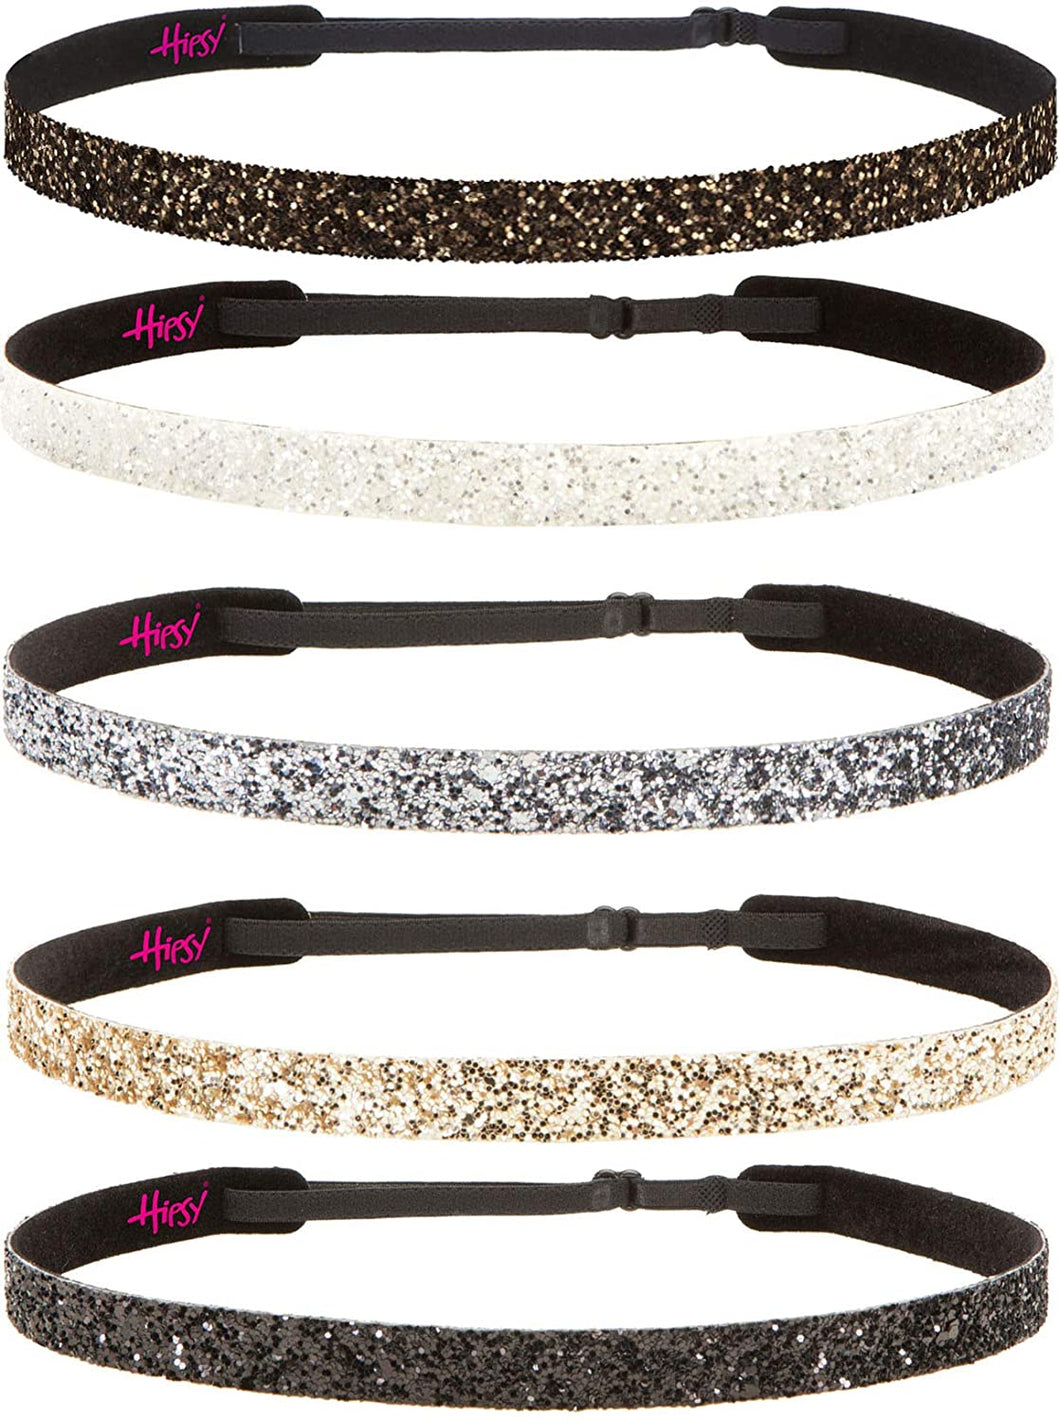 Hipsy Women's Adjustable NO SLIP Bling Glitter Headband Multi Gift Packs (Skinny Black/Gold/Gunmetal/White/Brown 5pk)